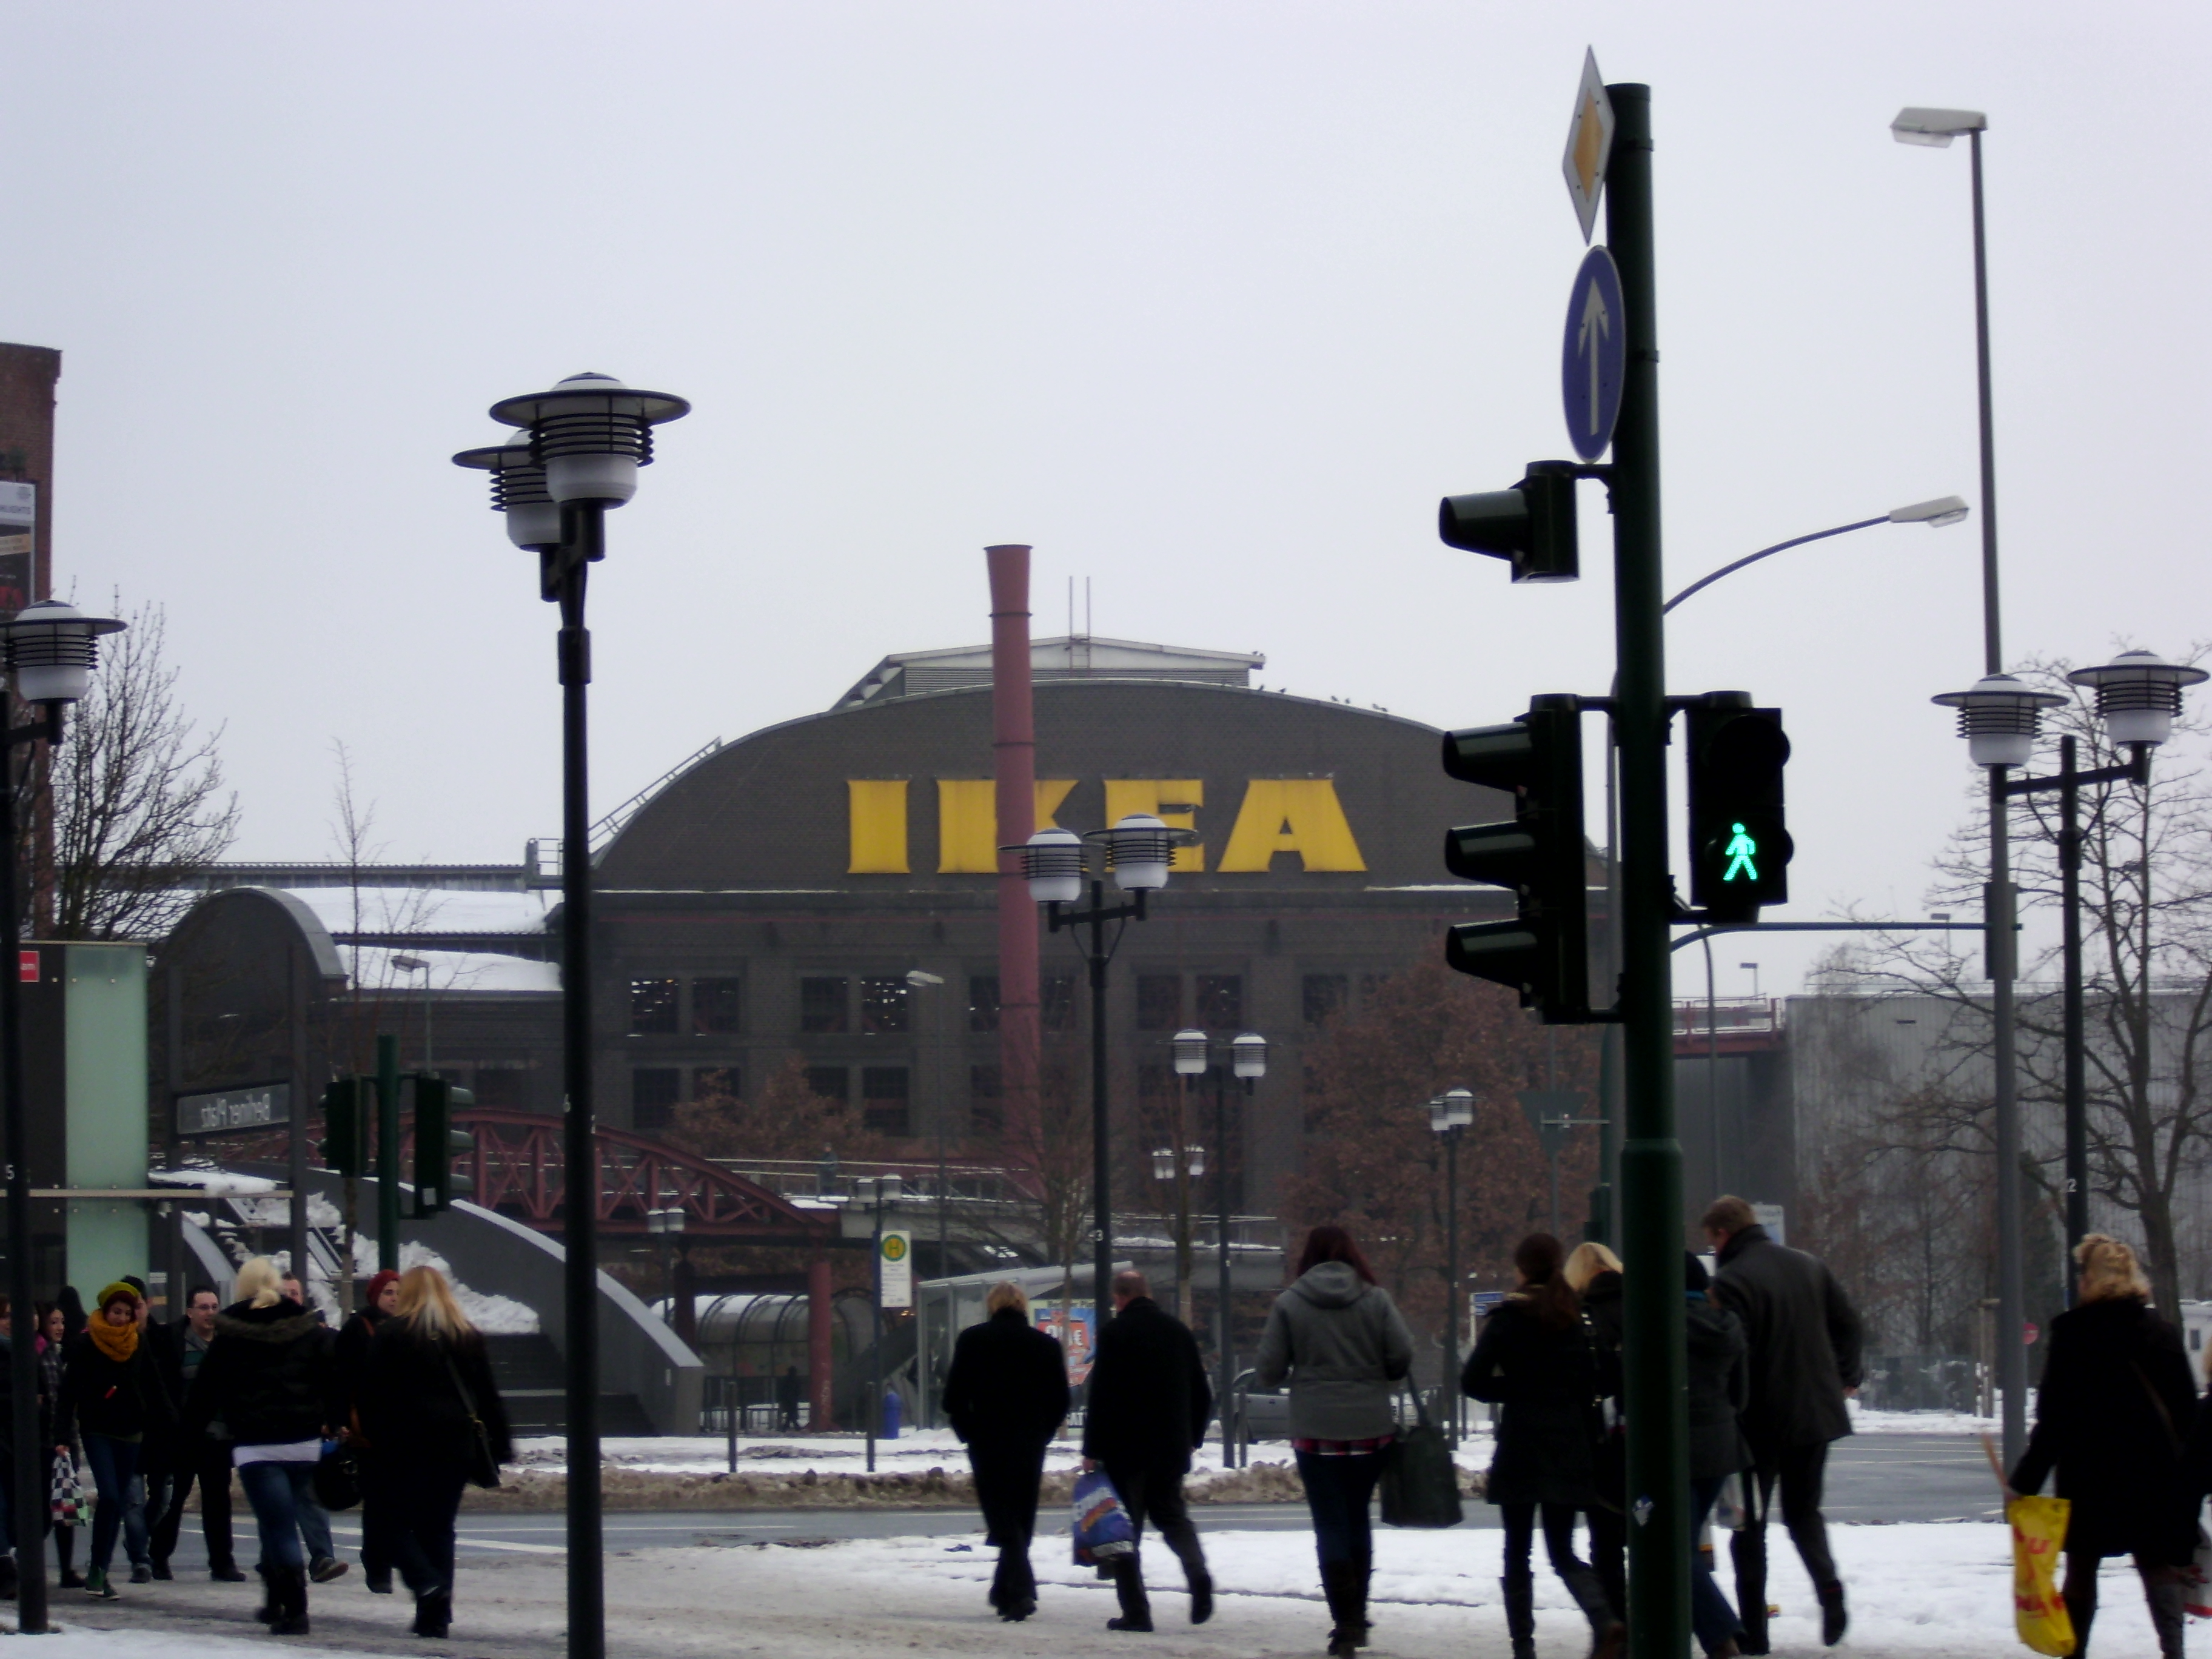 Rechts neben dem alten Fabrikgebäude der Bau von Ikea